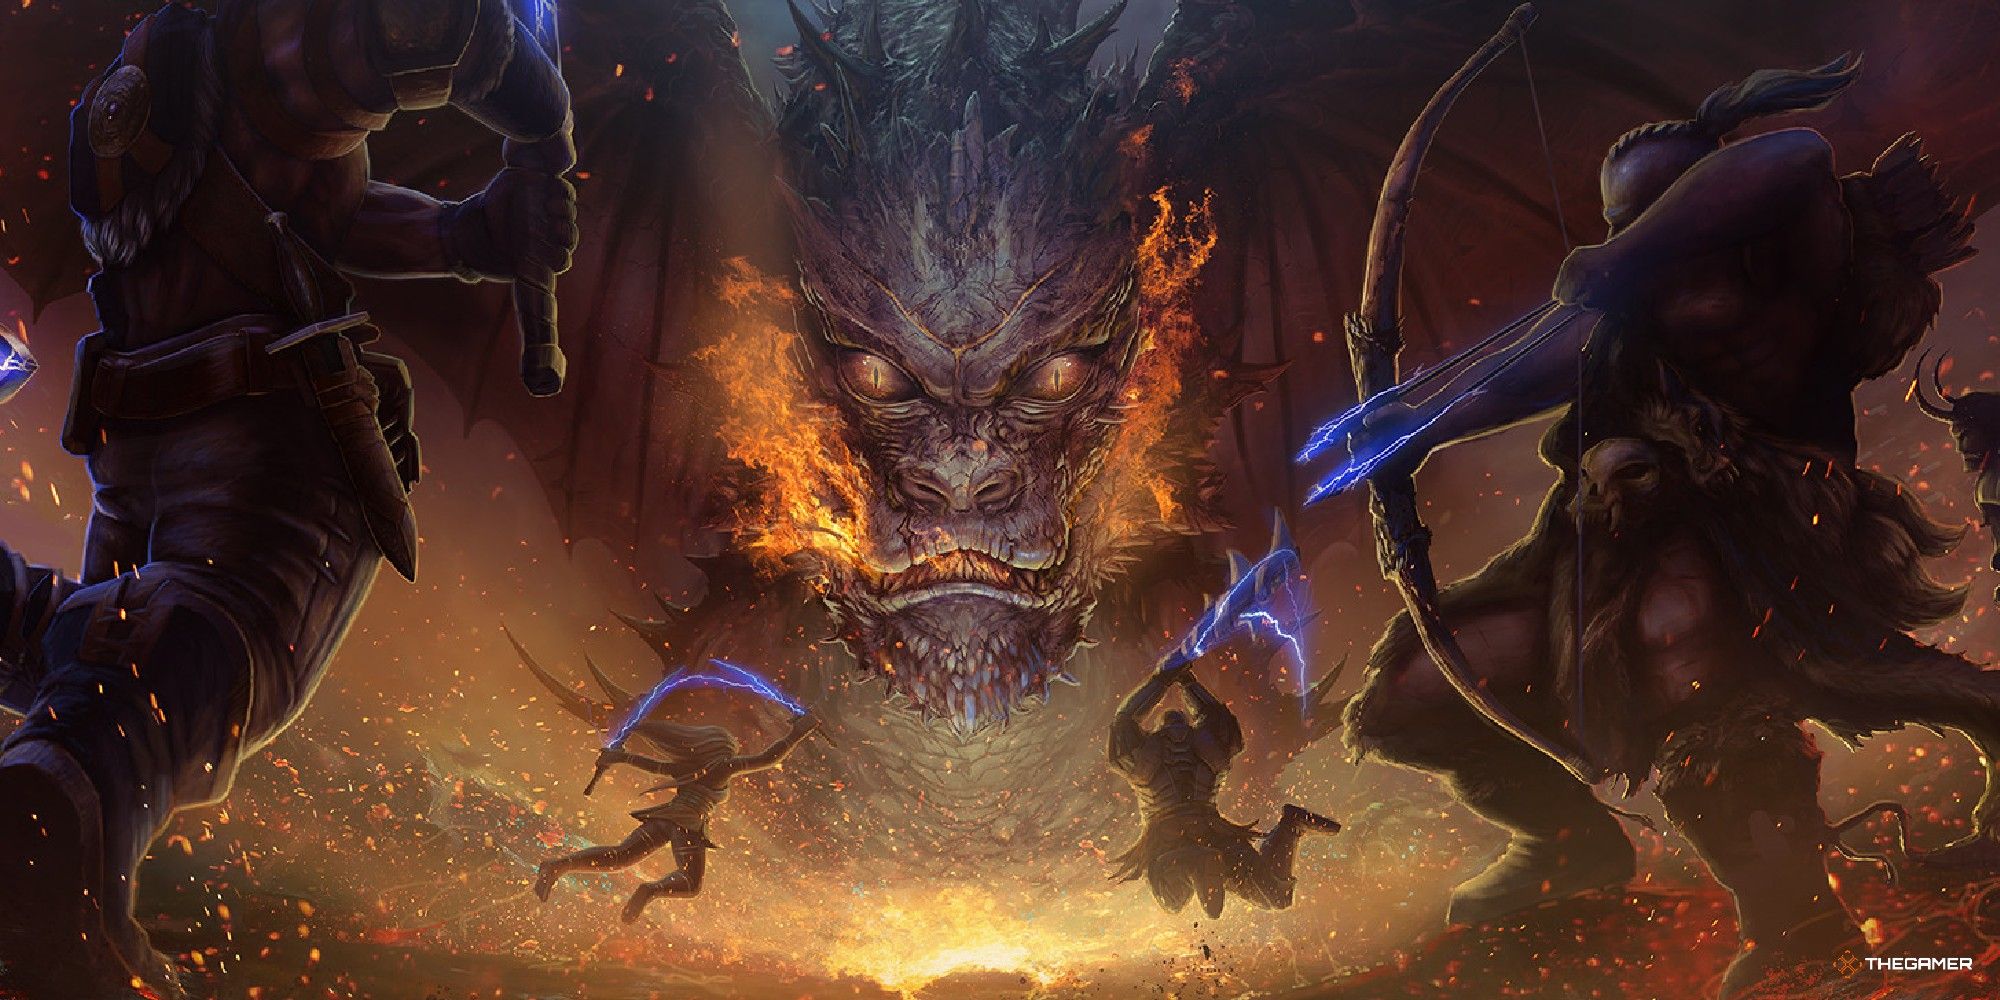 Grupo de Dungeons & Dragons cargando hacia un dragón